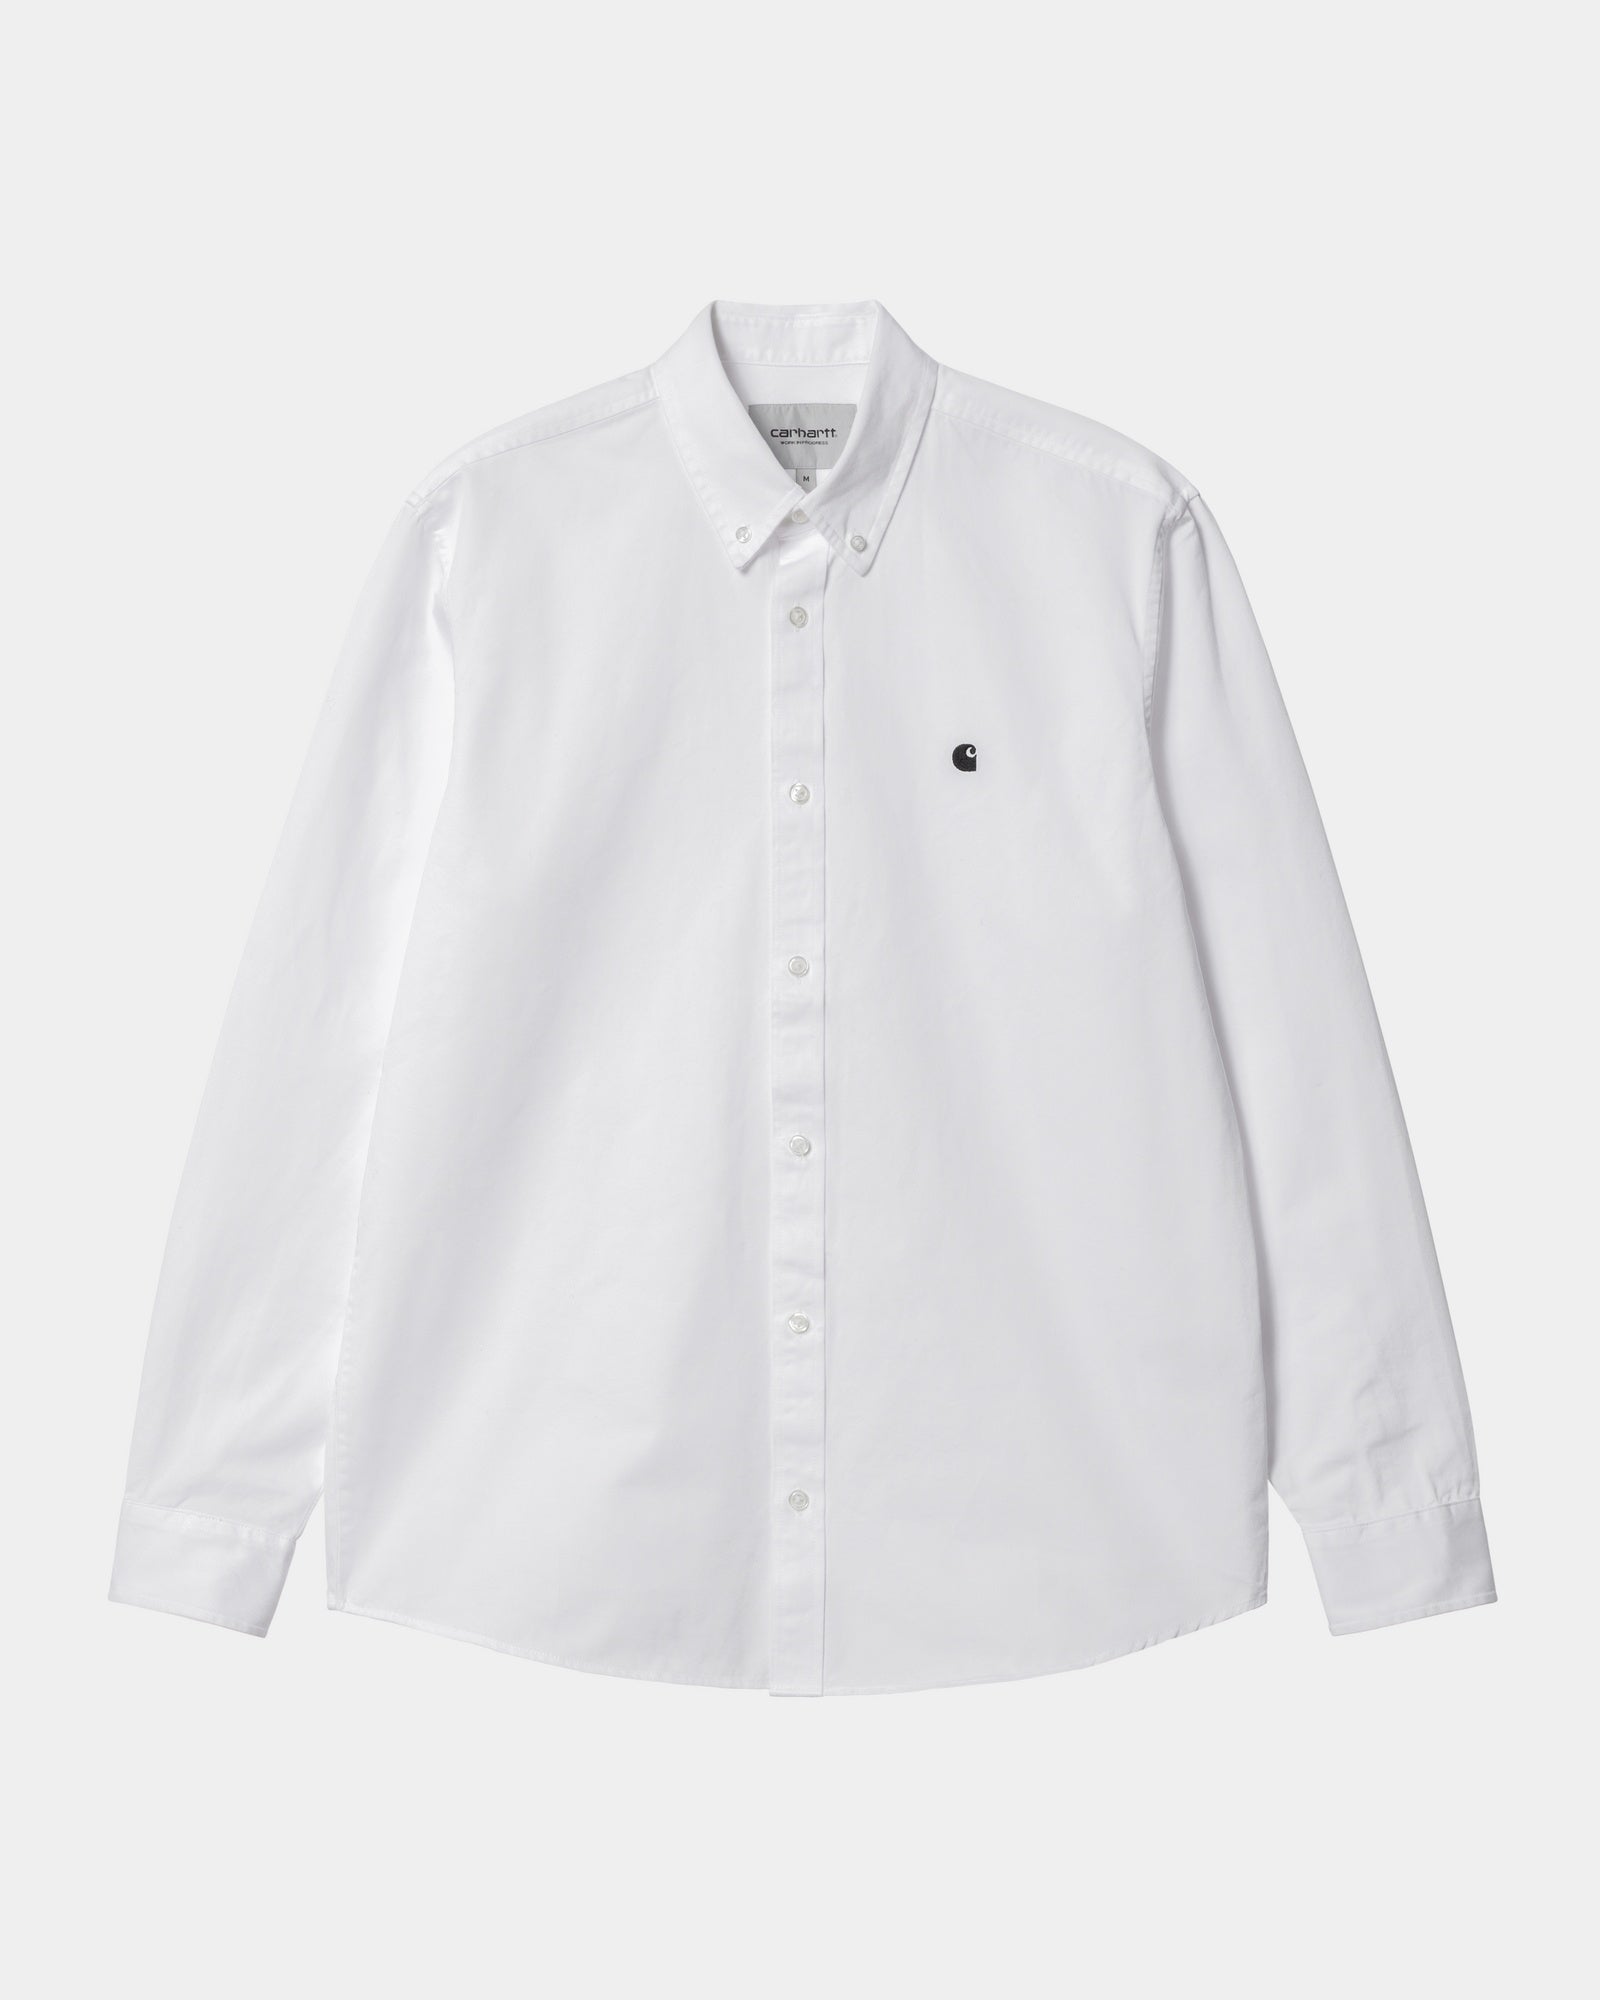 칼하트WIP Carhartt Madison Shirt,White